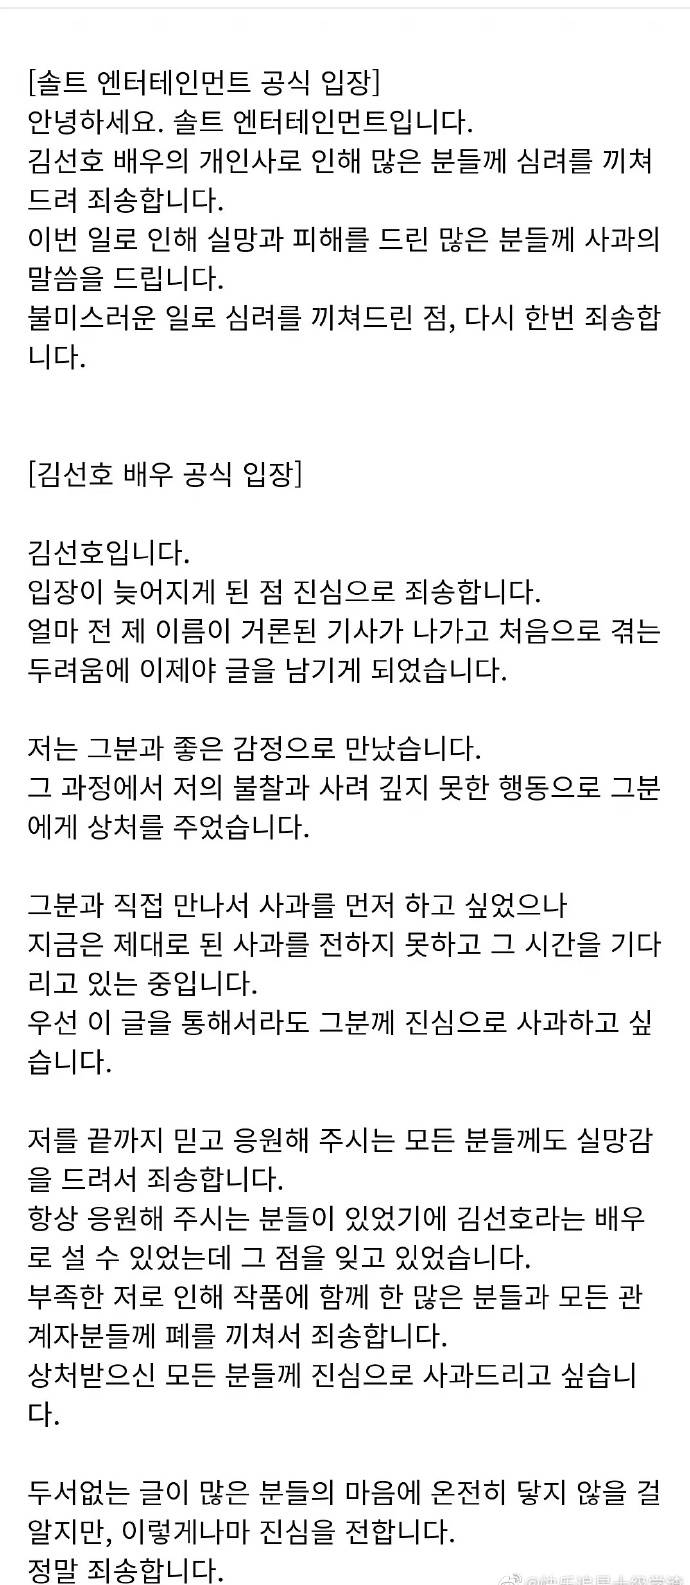 金宣虎發文承認爆料內容 想親自見面道歉